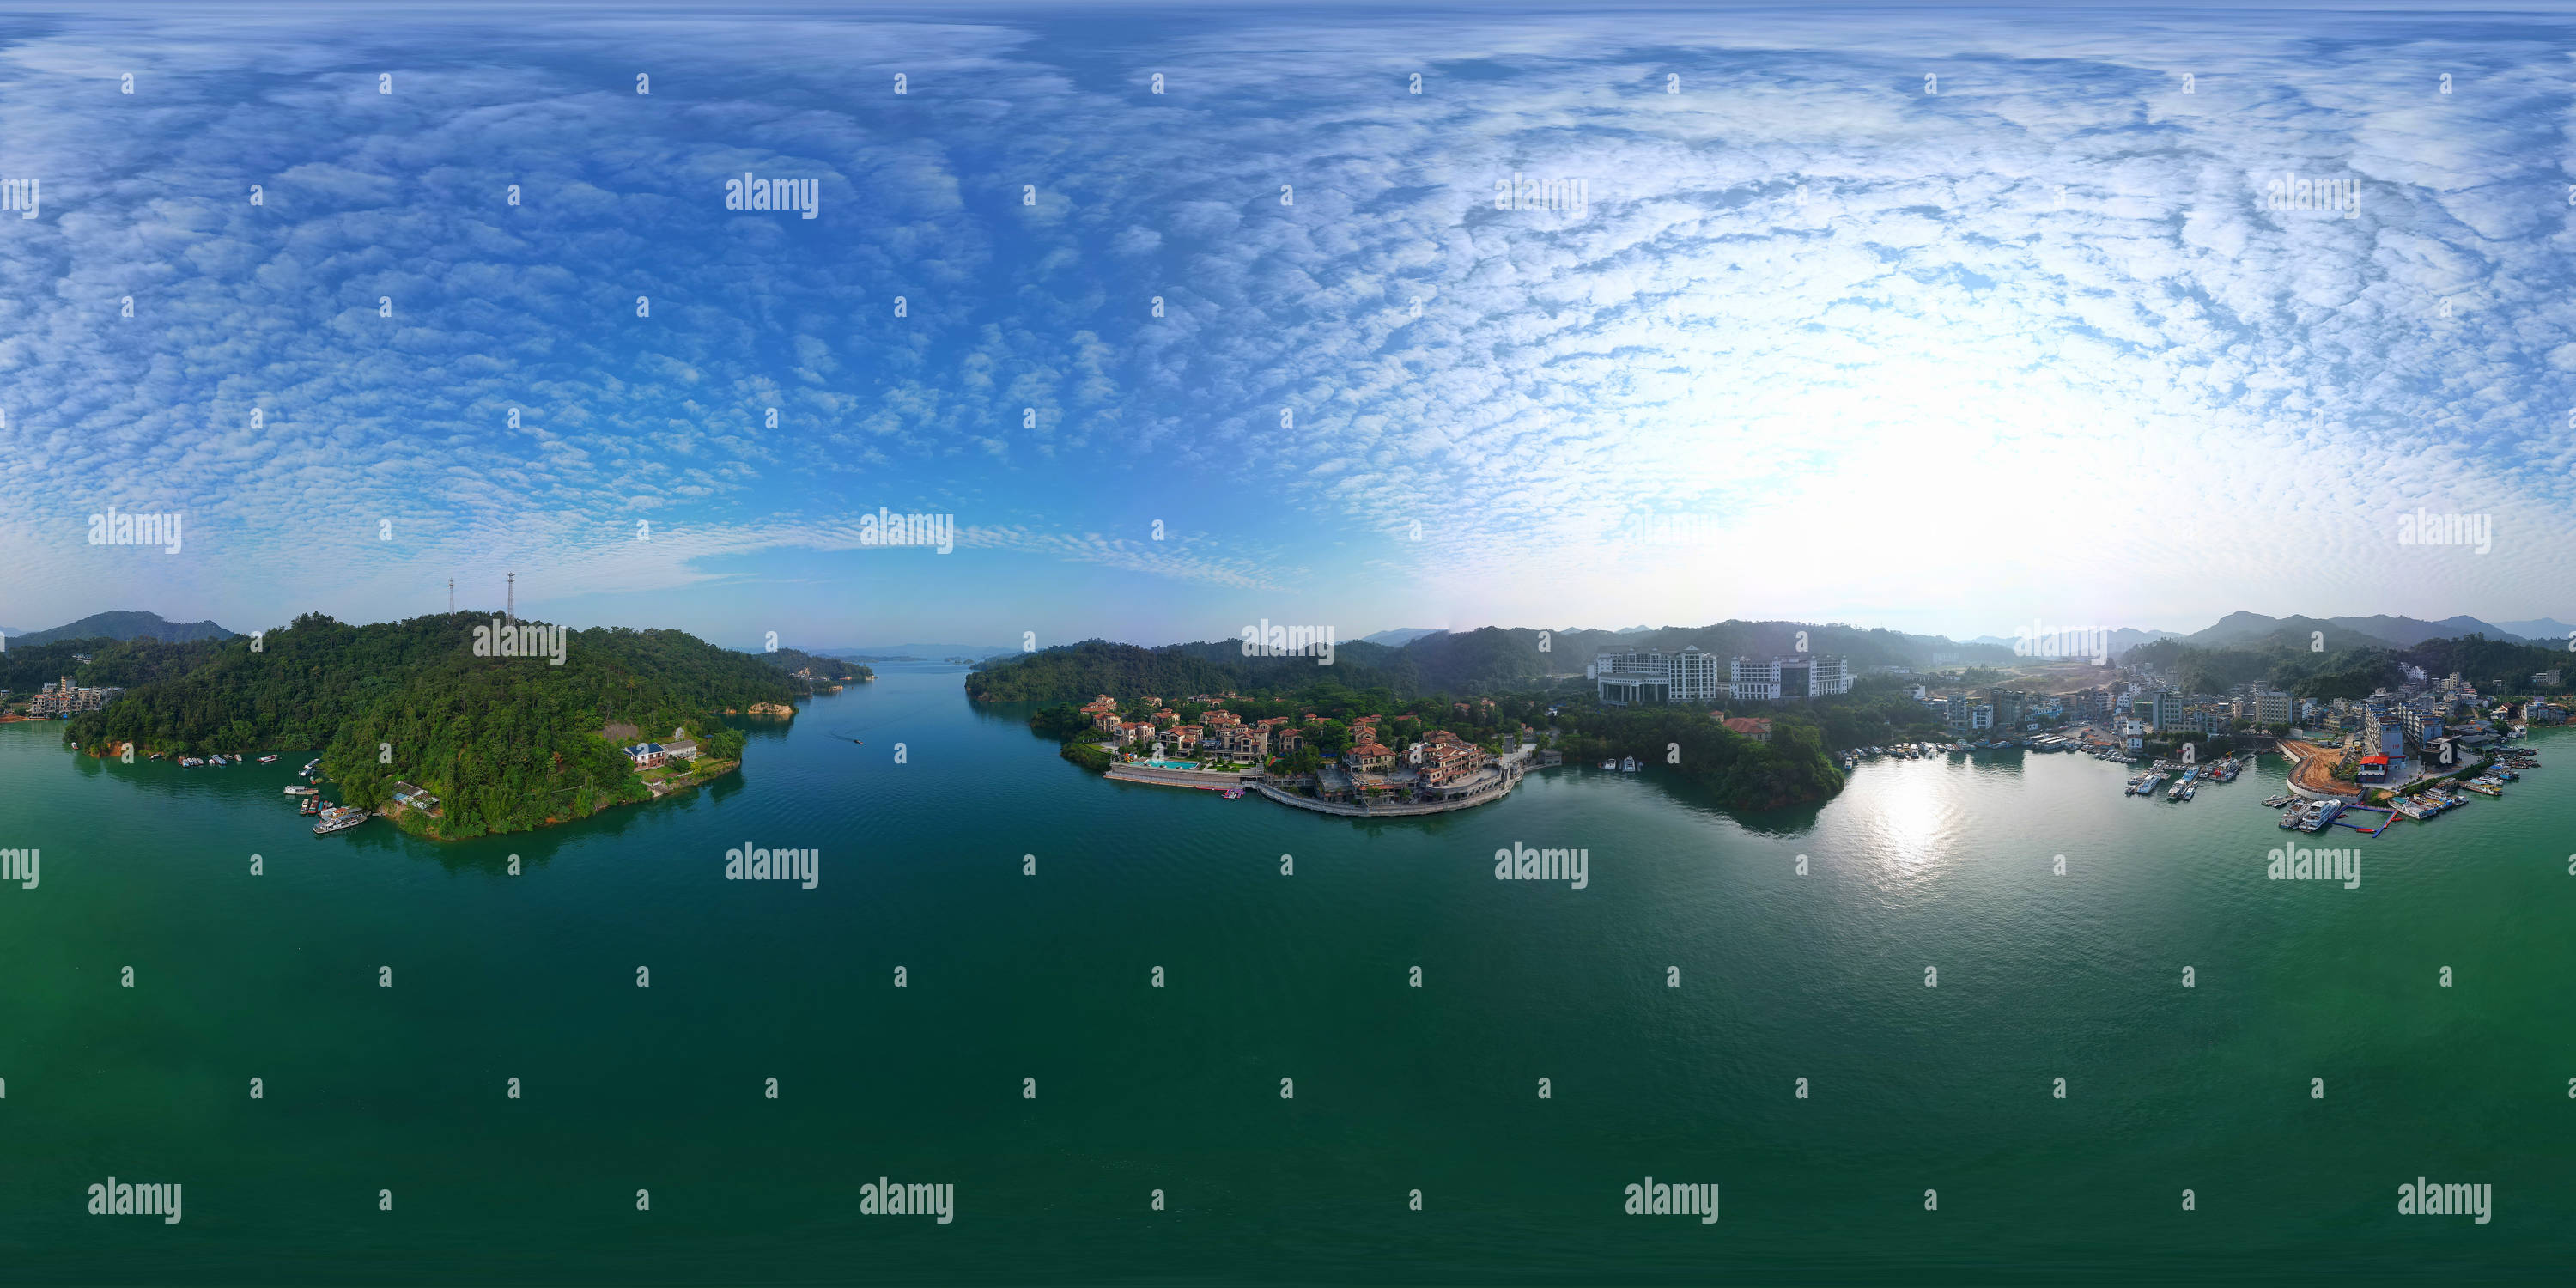 360 Grad Panorama Ansicht von Wanlv-See 万绿湖